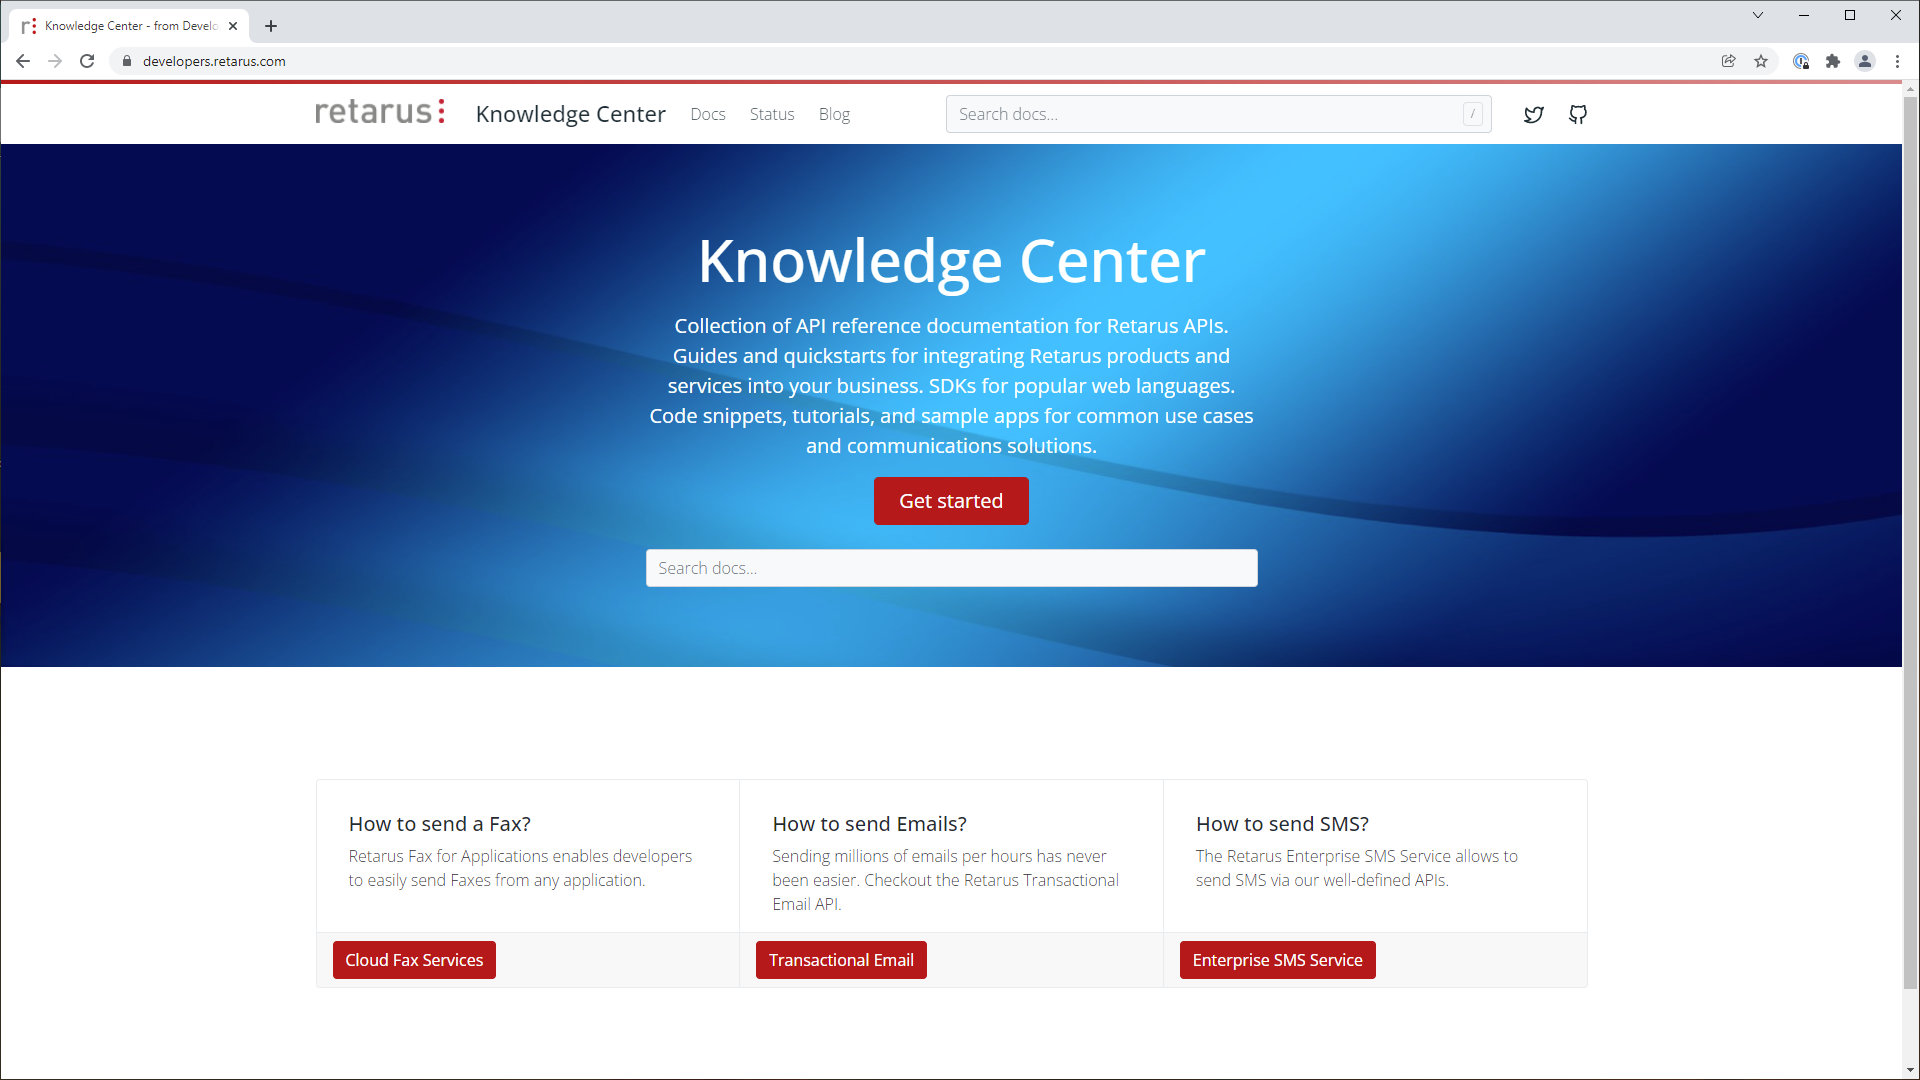 Nuestro Knowledge Center: de desarrolladores para desarrolladores